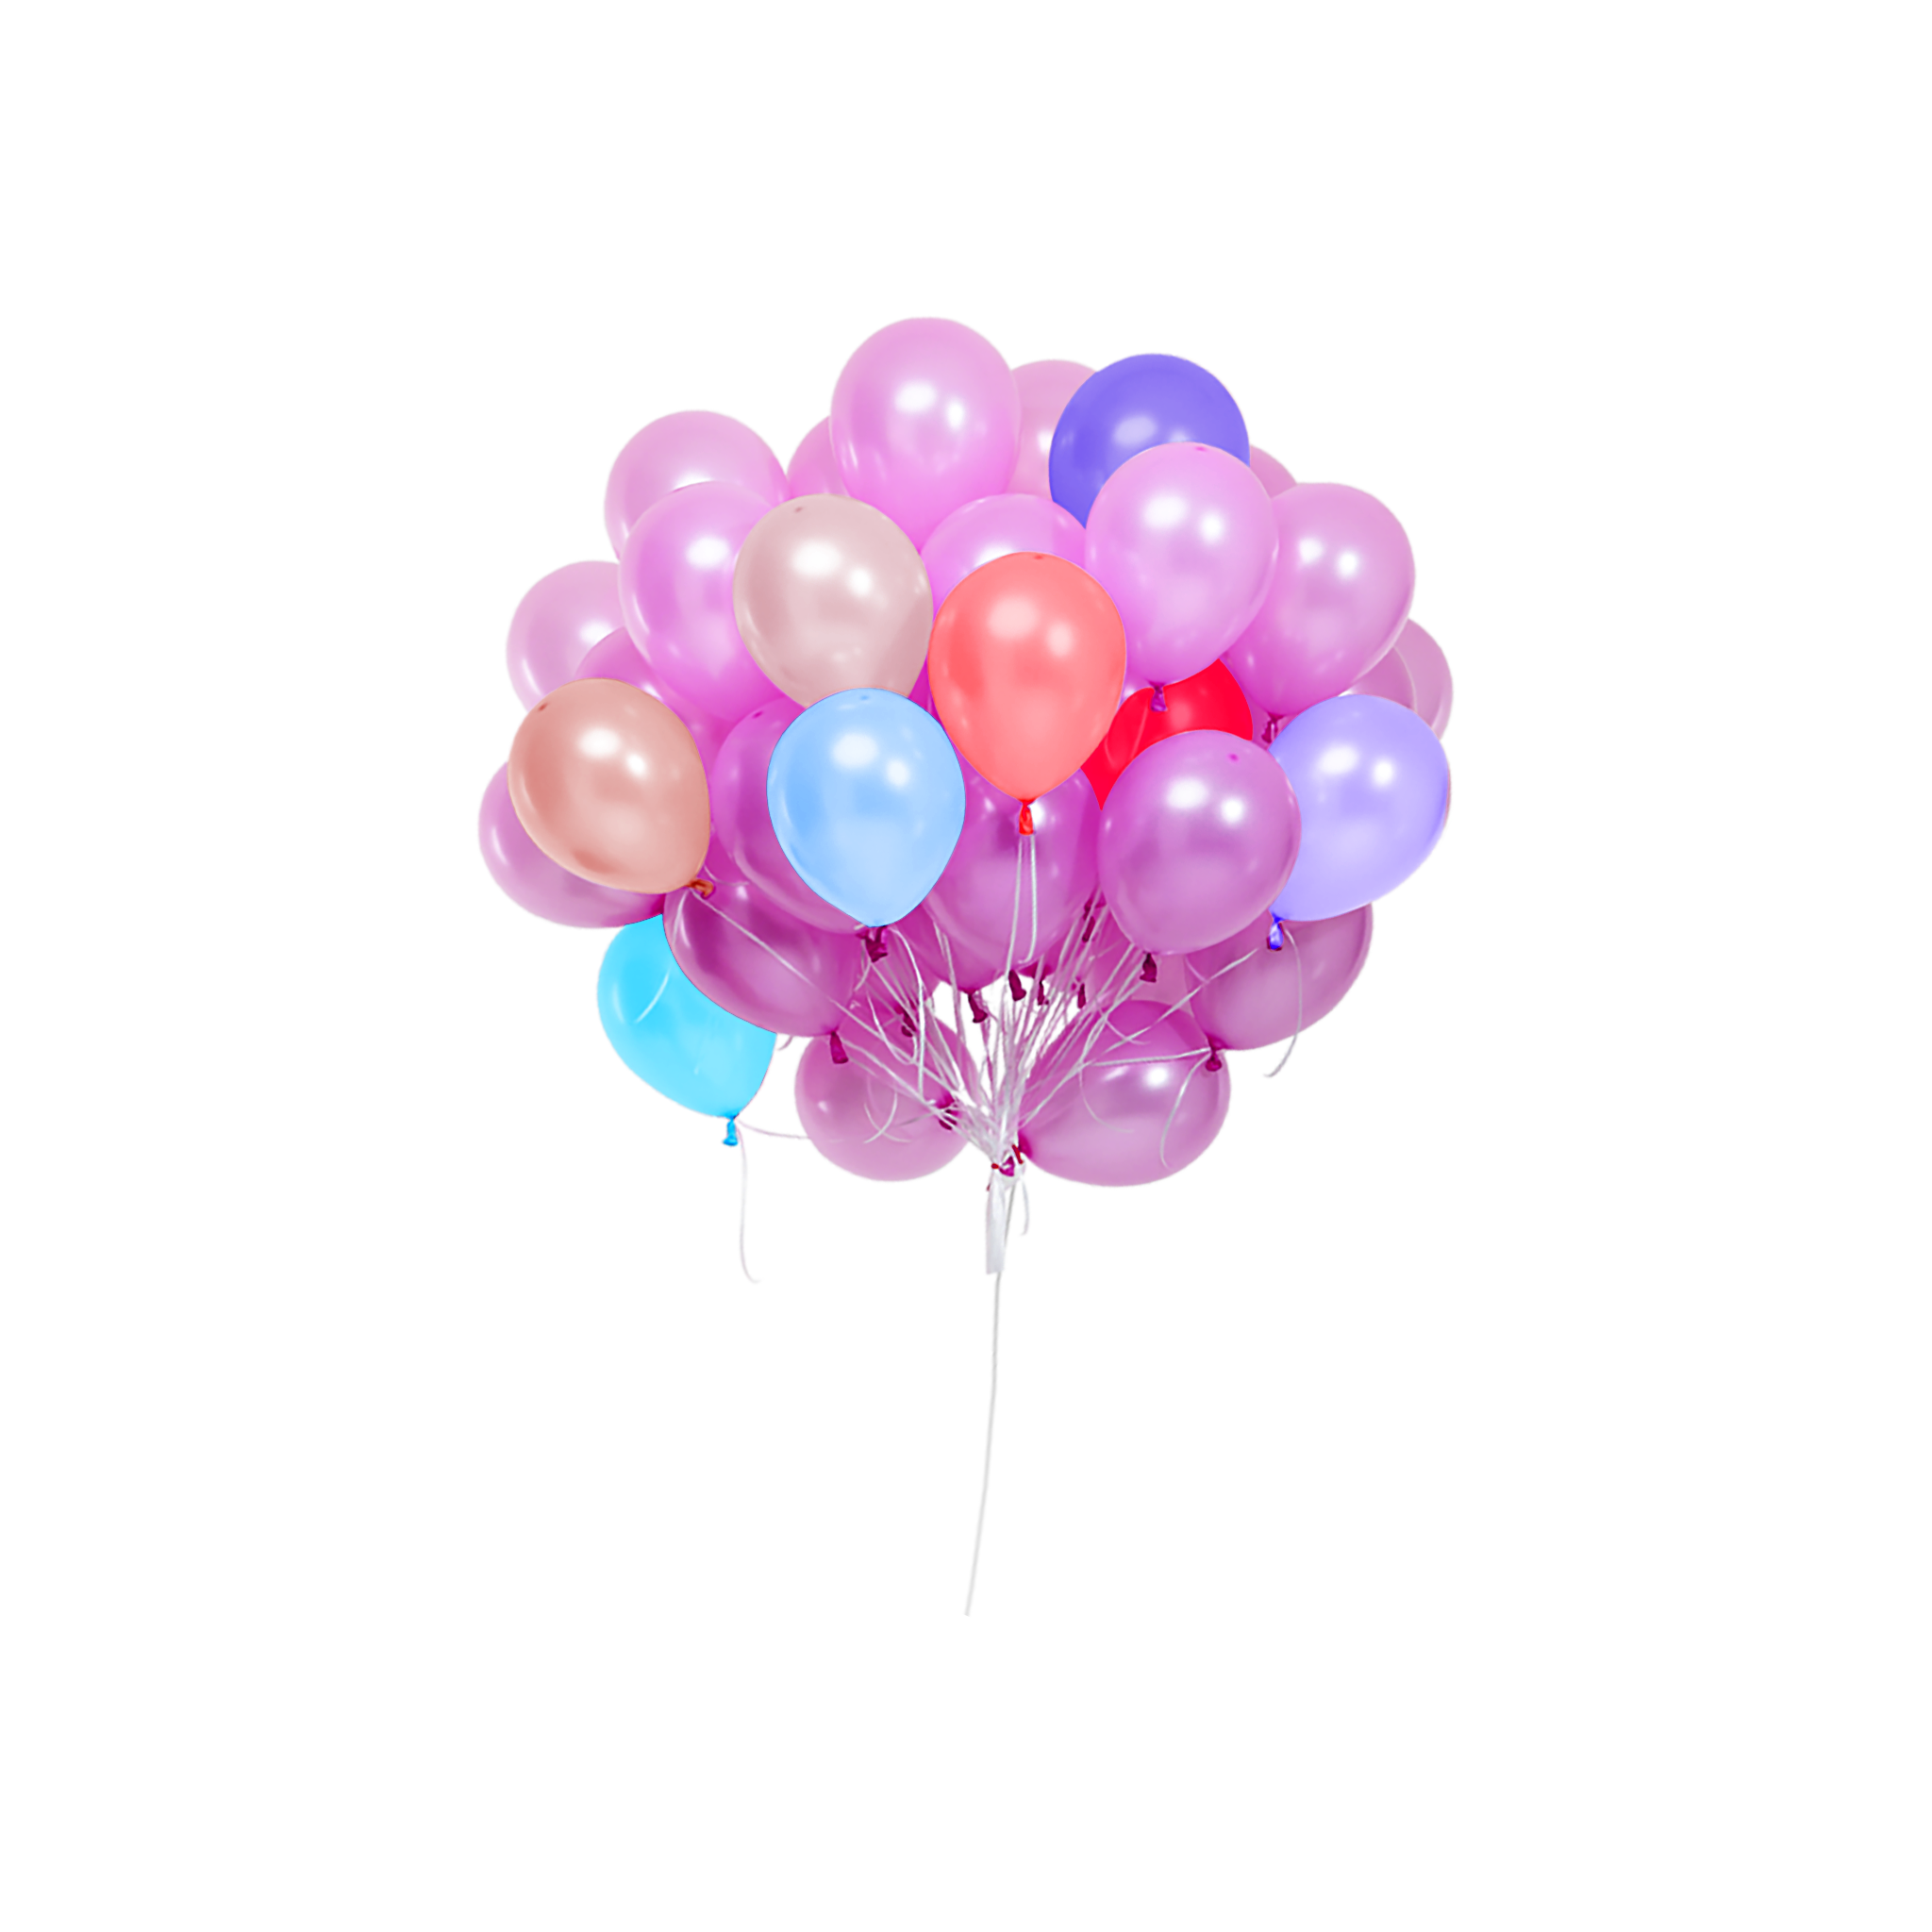 Violet Balloon Télécharger limage PNG Transparente